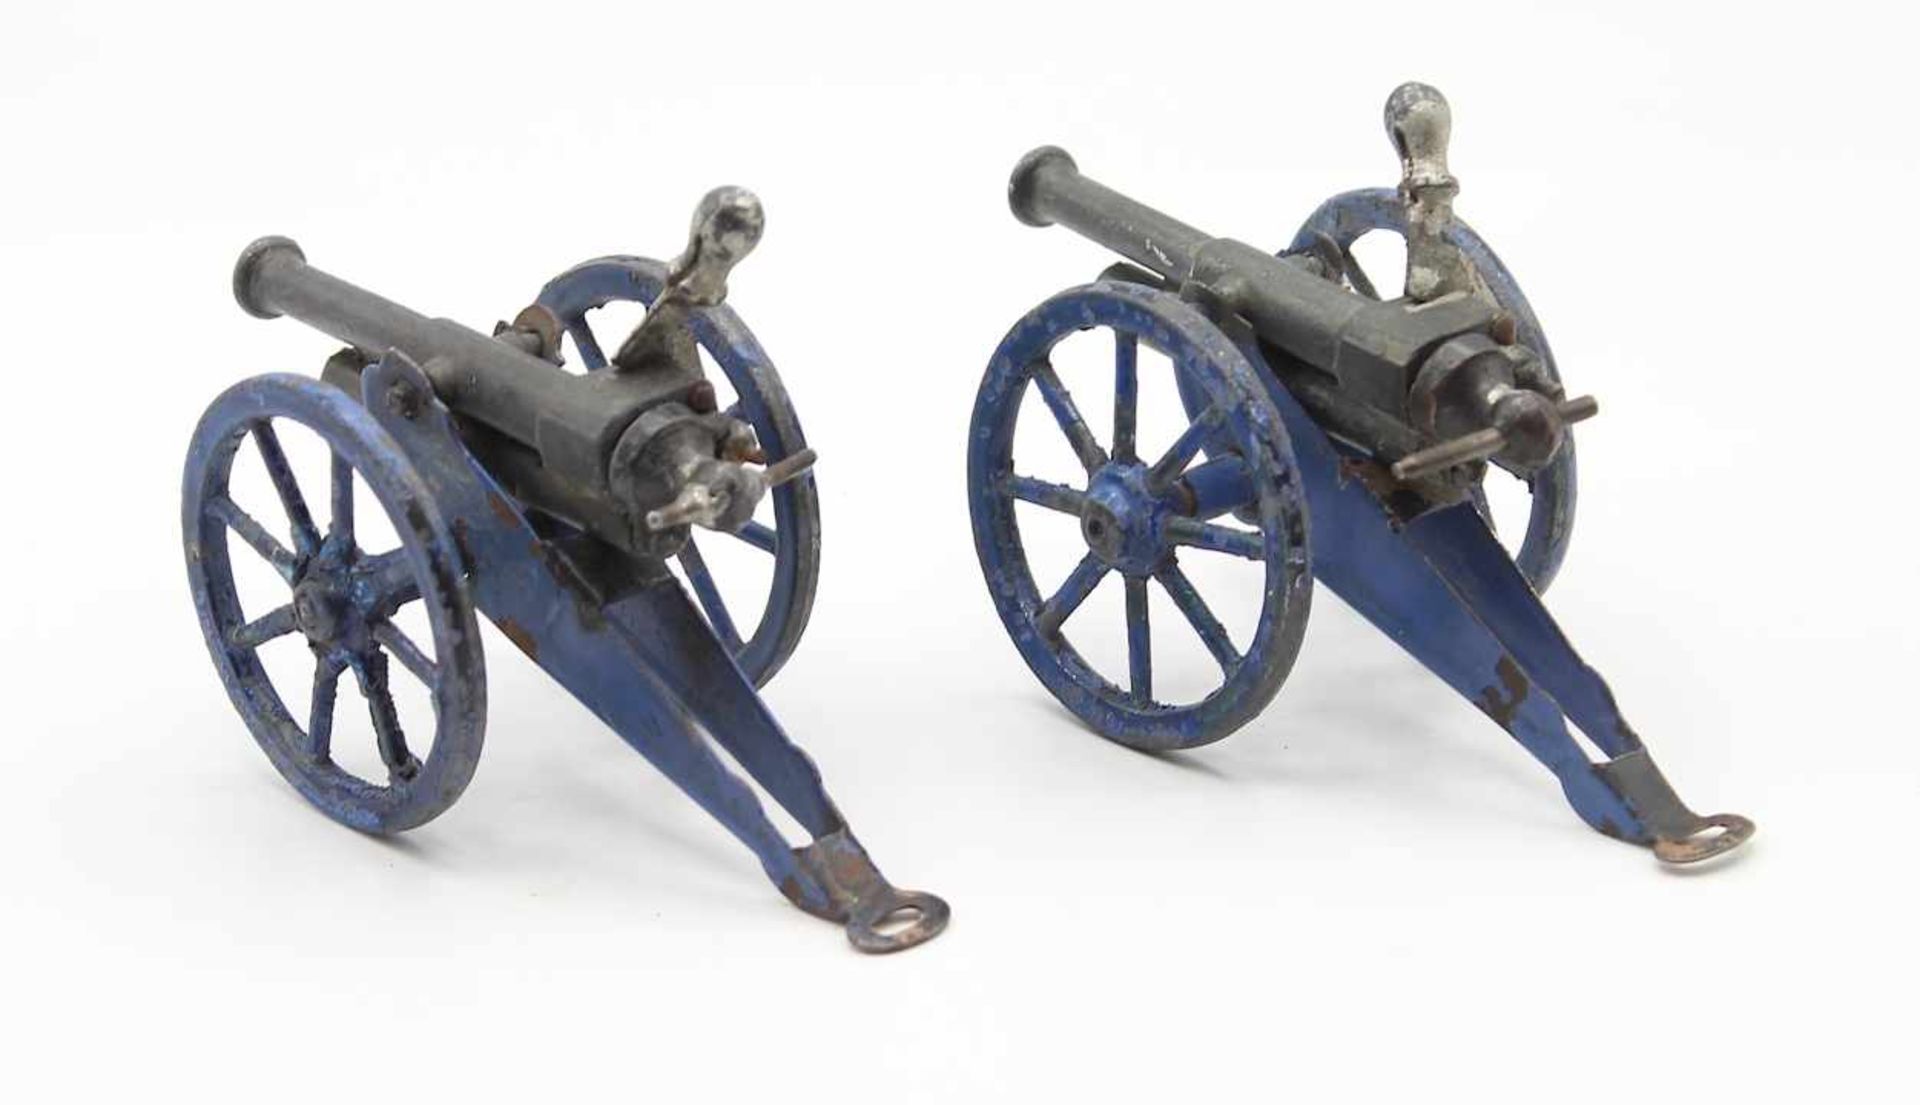 Lot Spielzeug Ritterburg, Holz gefaßt Maße ca. 40x35x40 cm, anbei Paar Kanonen, Gußeisen, mit